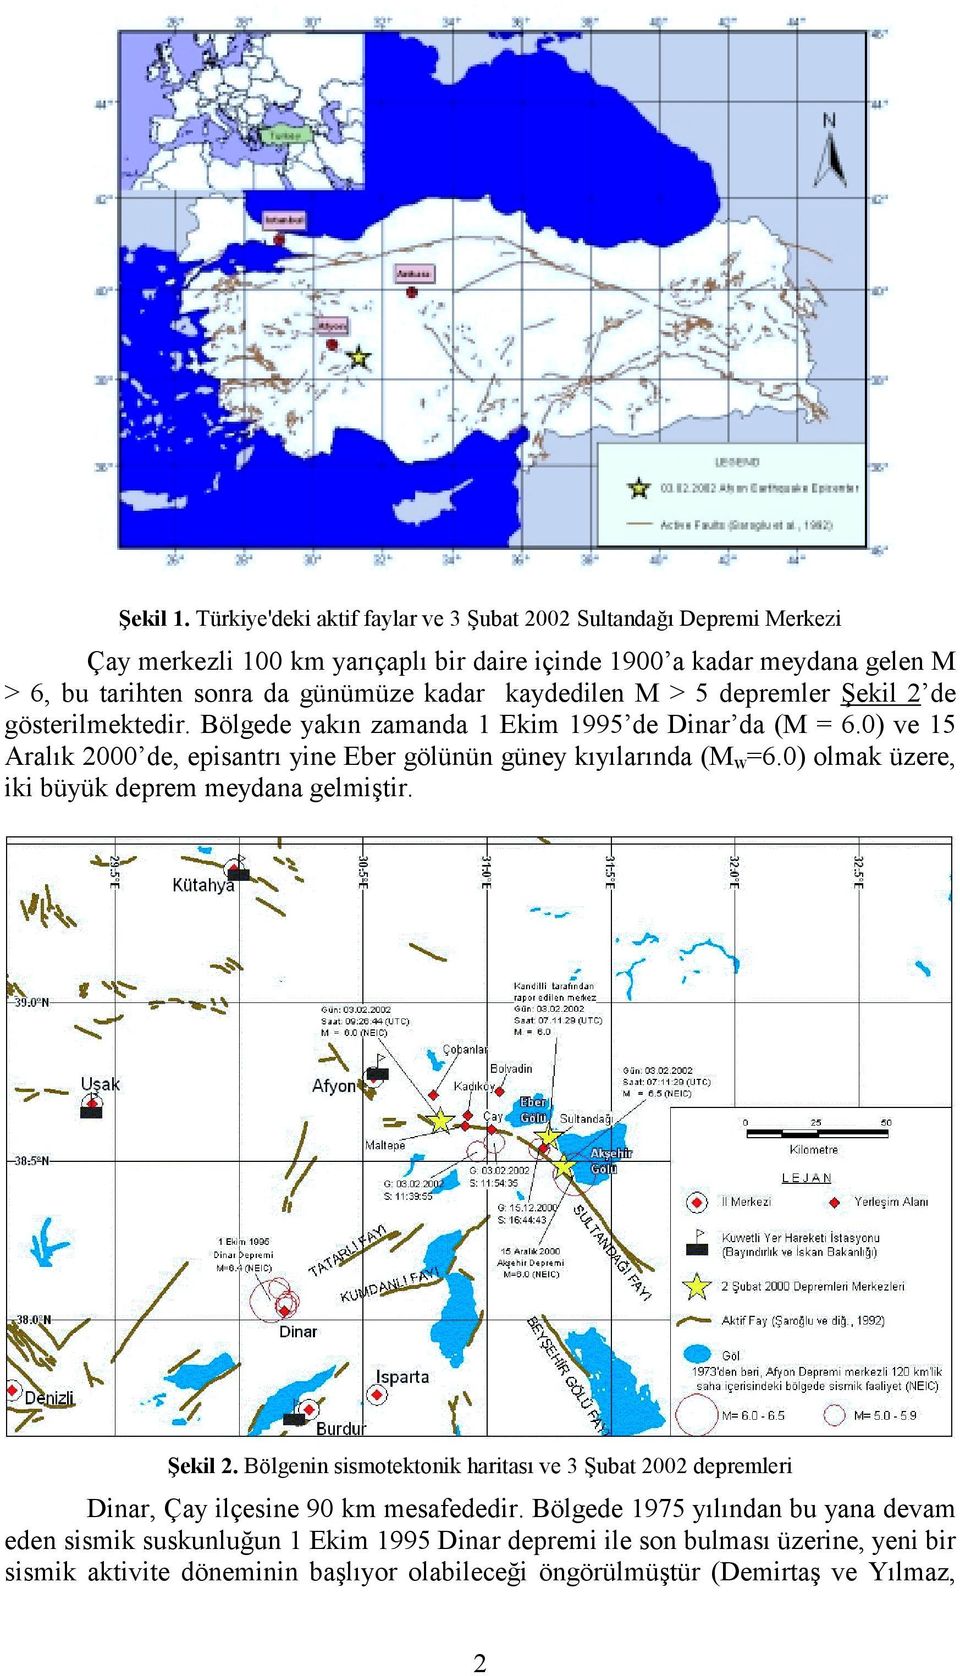 kaydedilen M > 5 depremler Şekil 2 de gösterilmektedir. Bölgede yakın zamanda 1 Ekim 1995 de Dinar da (M = 6.